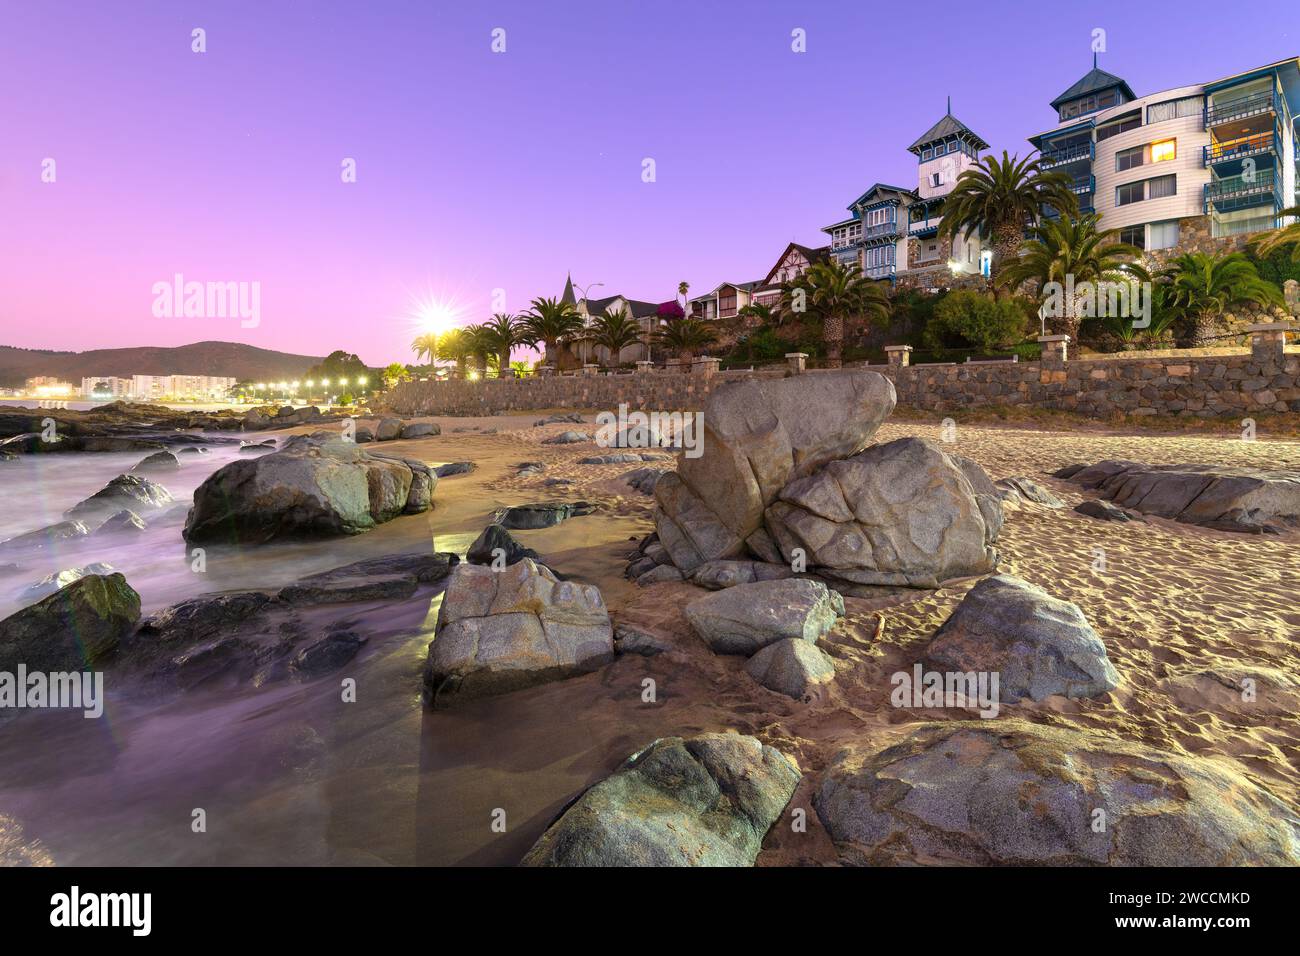 Il tramonto si adagia sulla pittoresca cittadina di mare di Papudo, che getta un sereno bagliore viola sulla costa rocciosa, mettendo in risalto la sua affascinante architettura costiera, Foto Stock